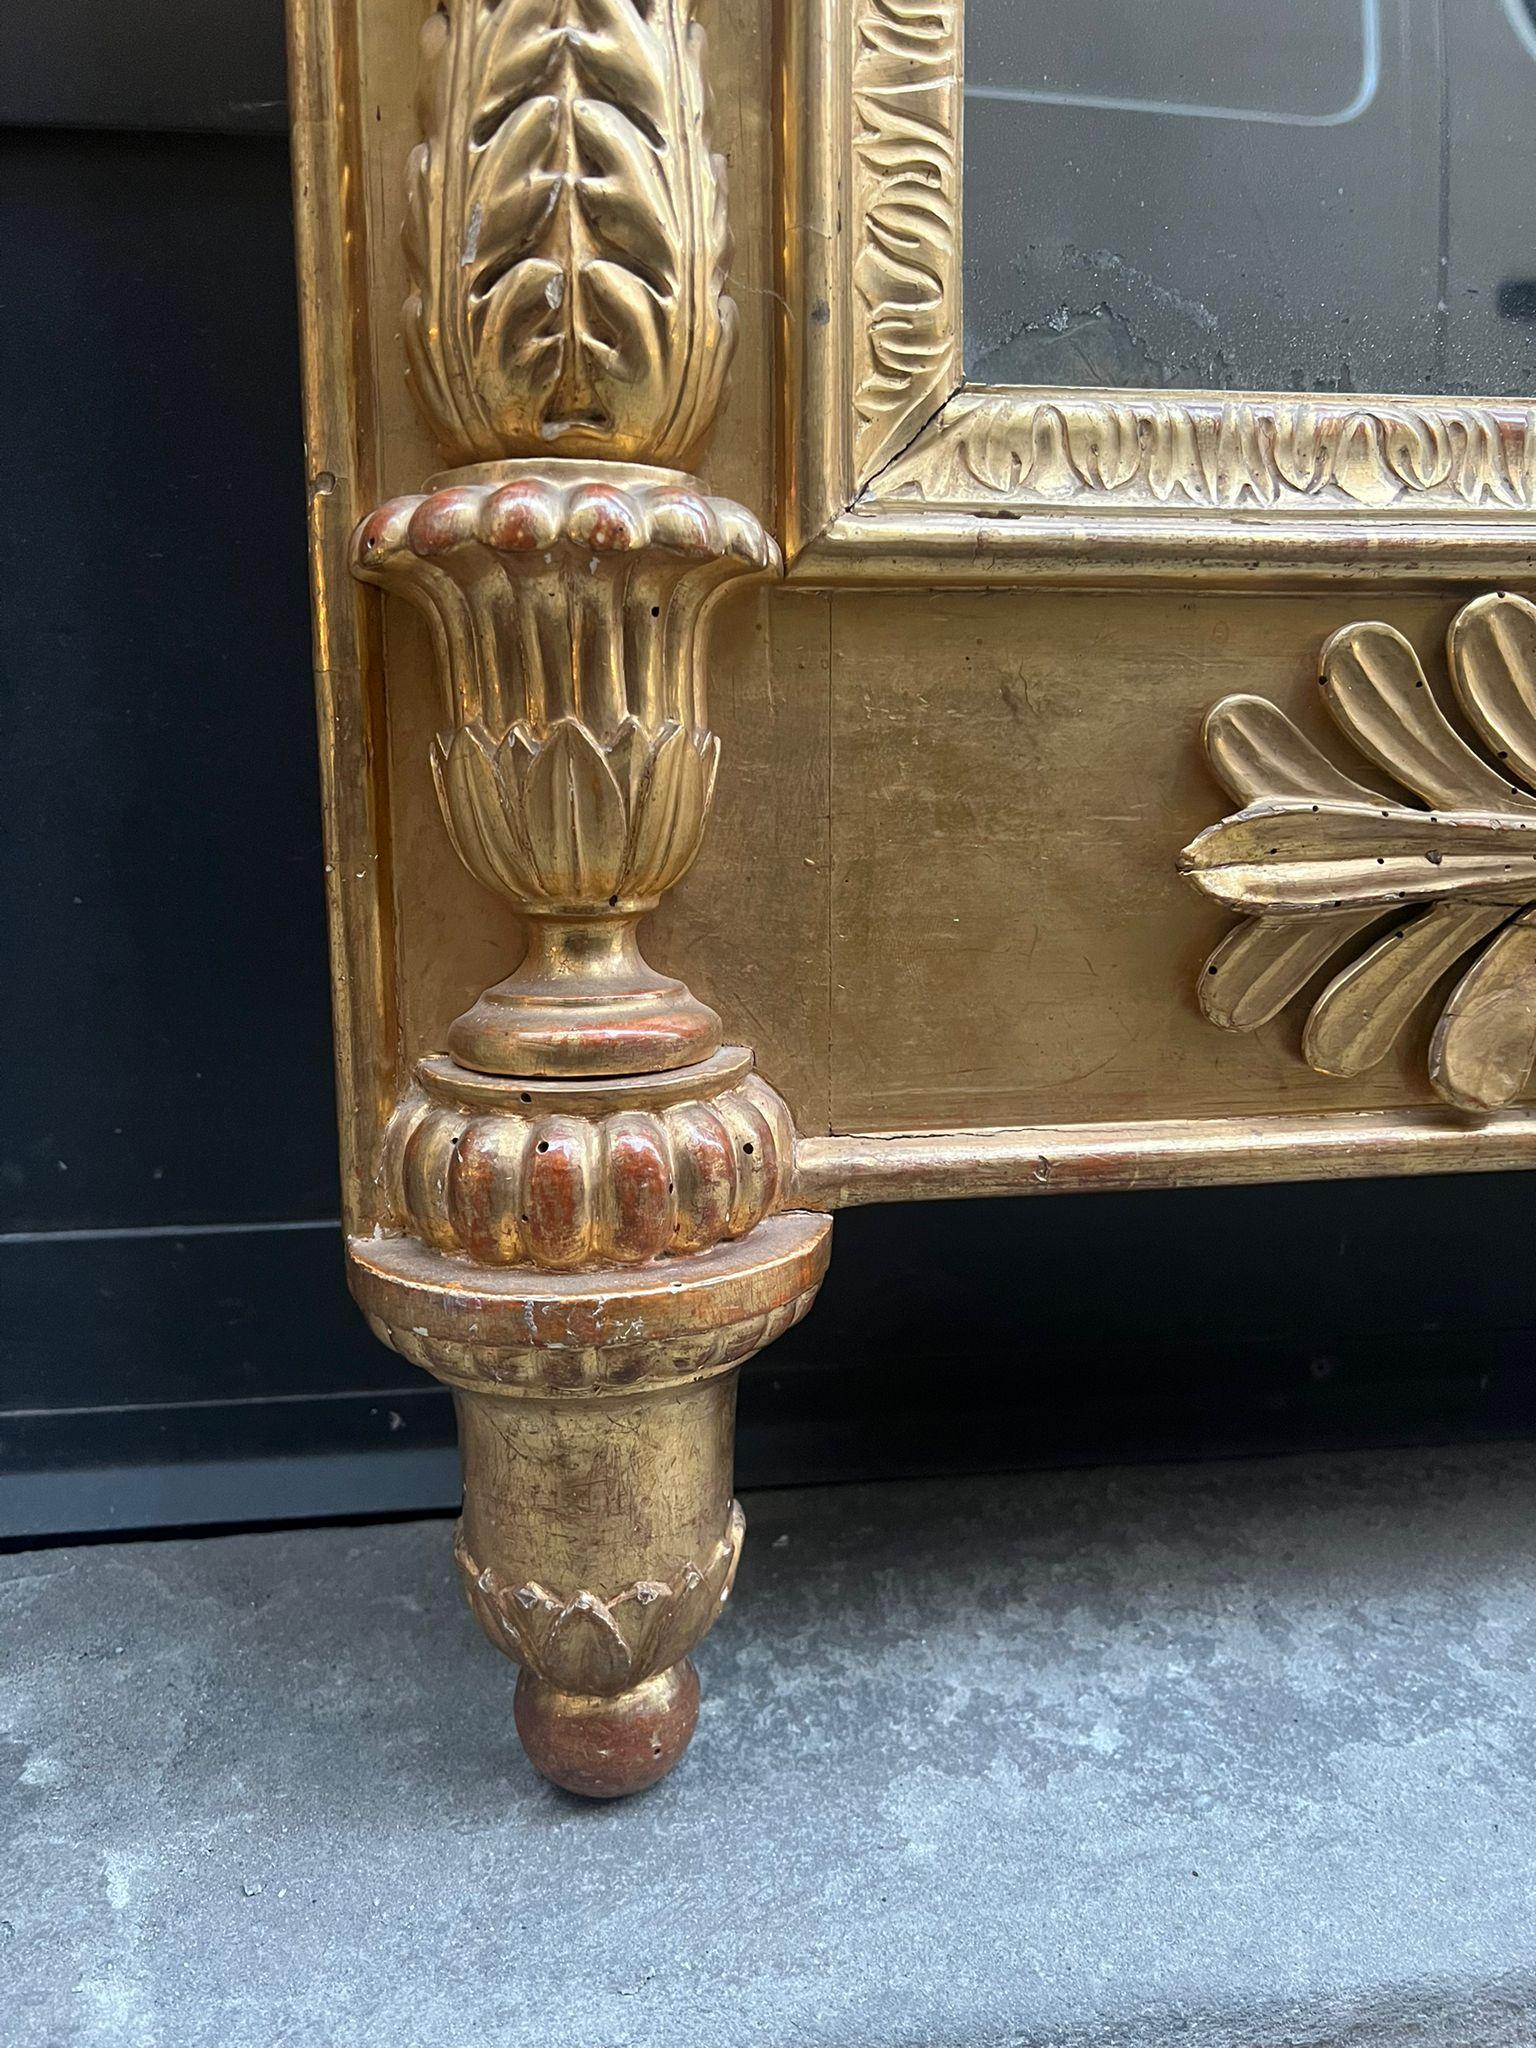 Bellissima specchiera in legno dorato ad oro zecchino con fregi e cimasa.

Estremamente ricchi sono gli intagli. 

Specchio originale, XIX secolo, Italia centrale.

Dimensioni: 7x84x163 cm 